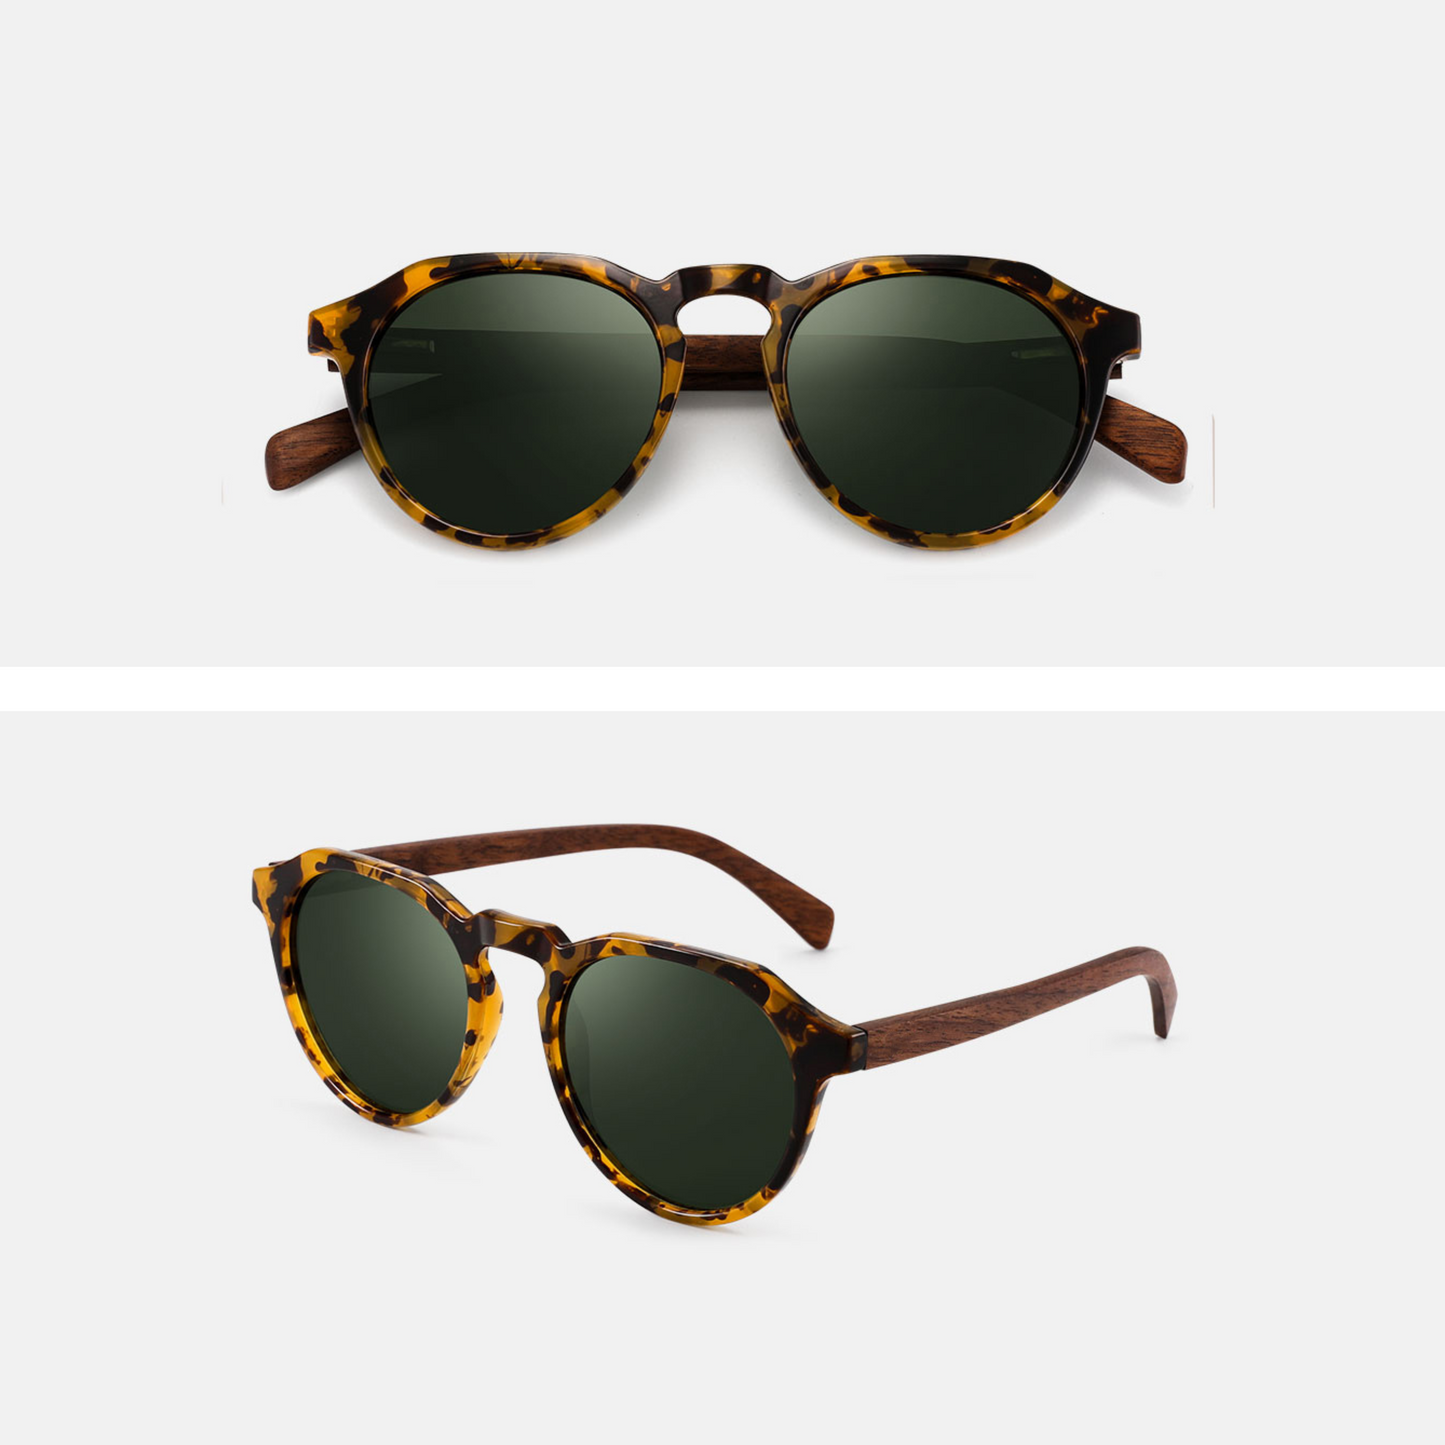 Ravenisa wood frame polarized sunglasses